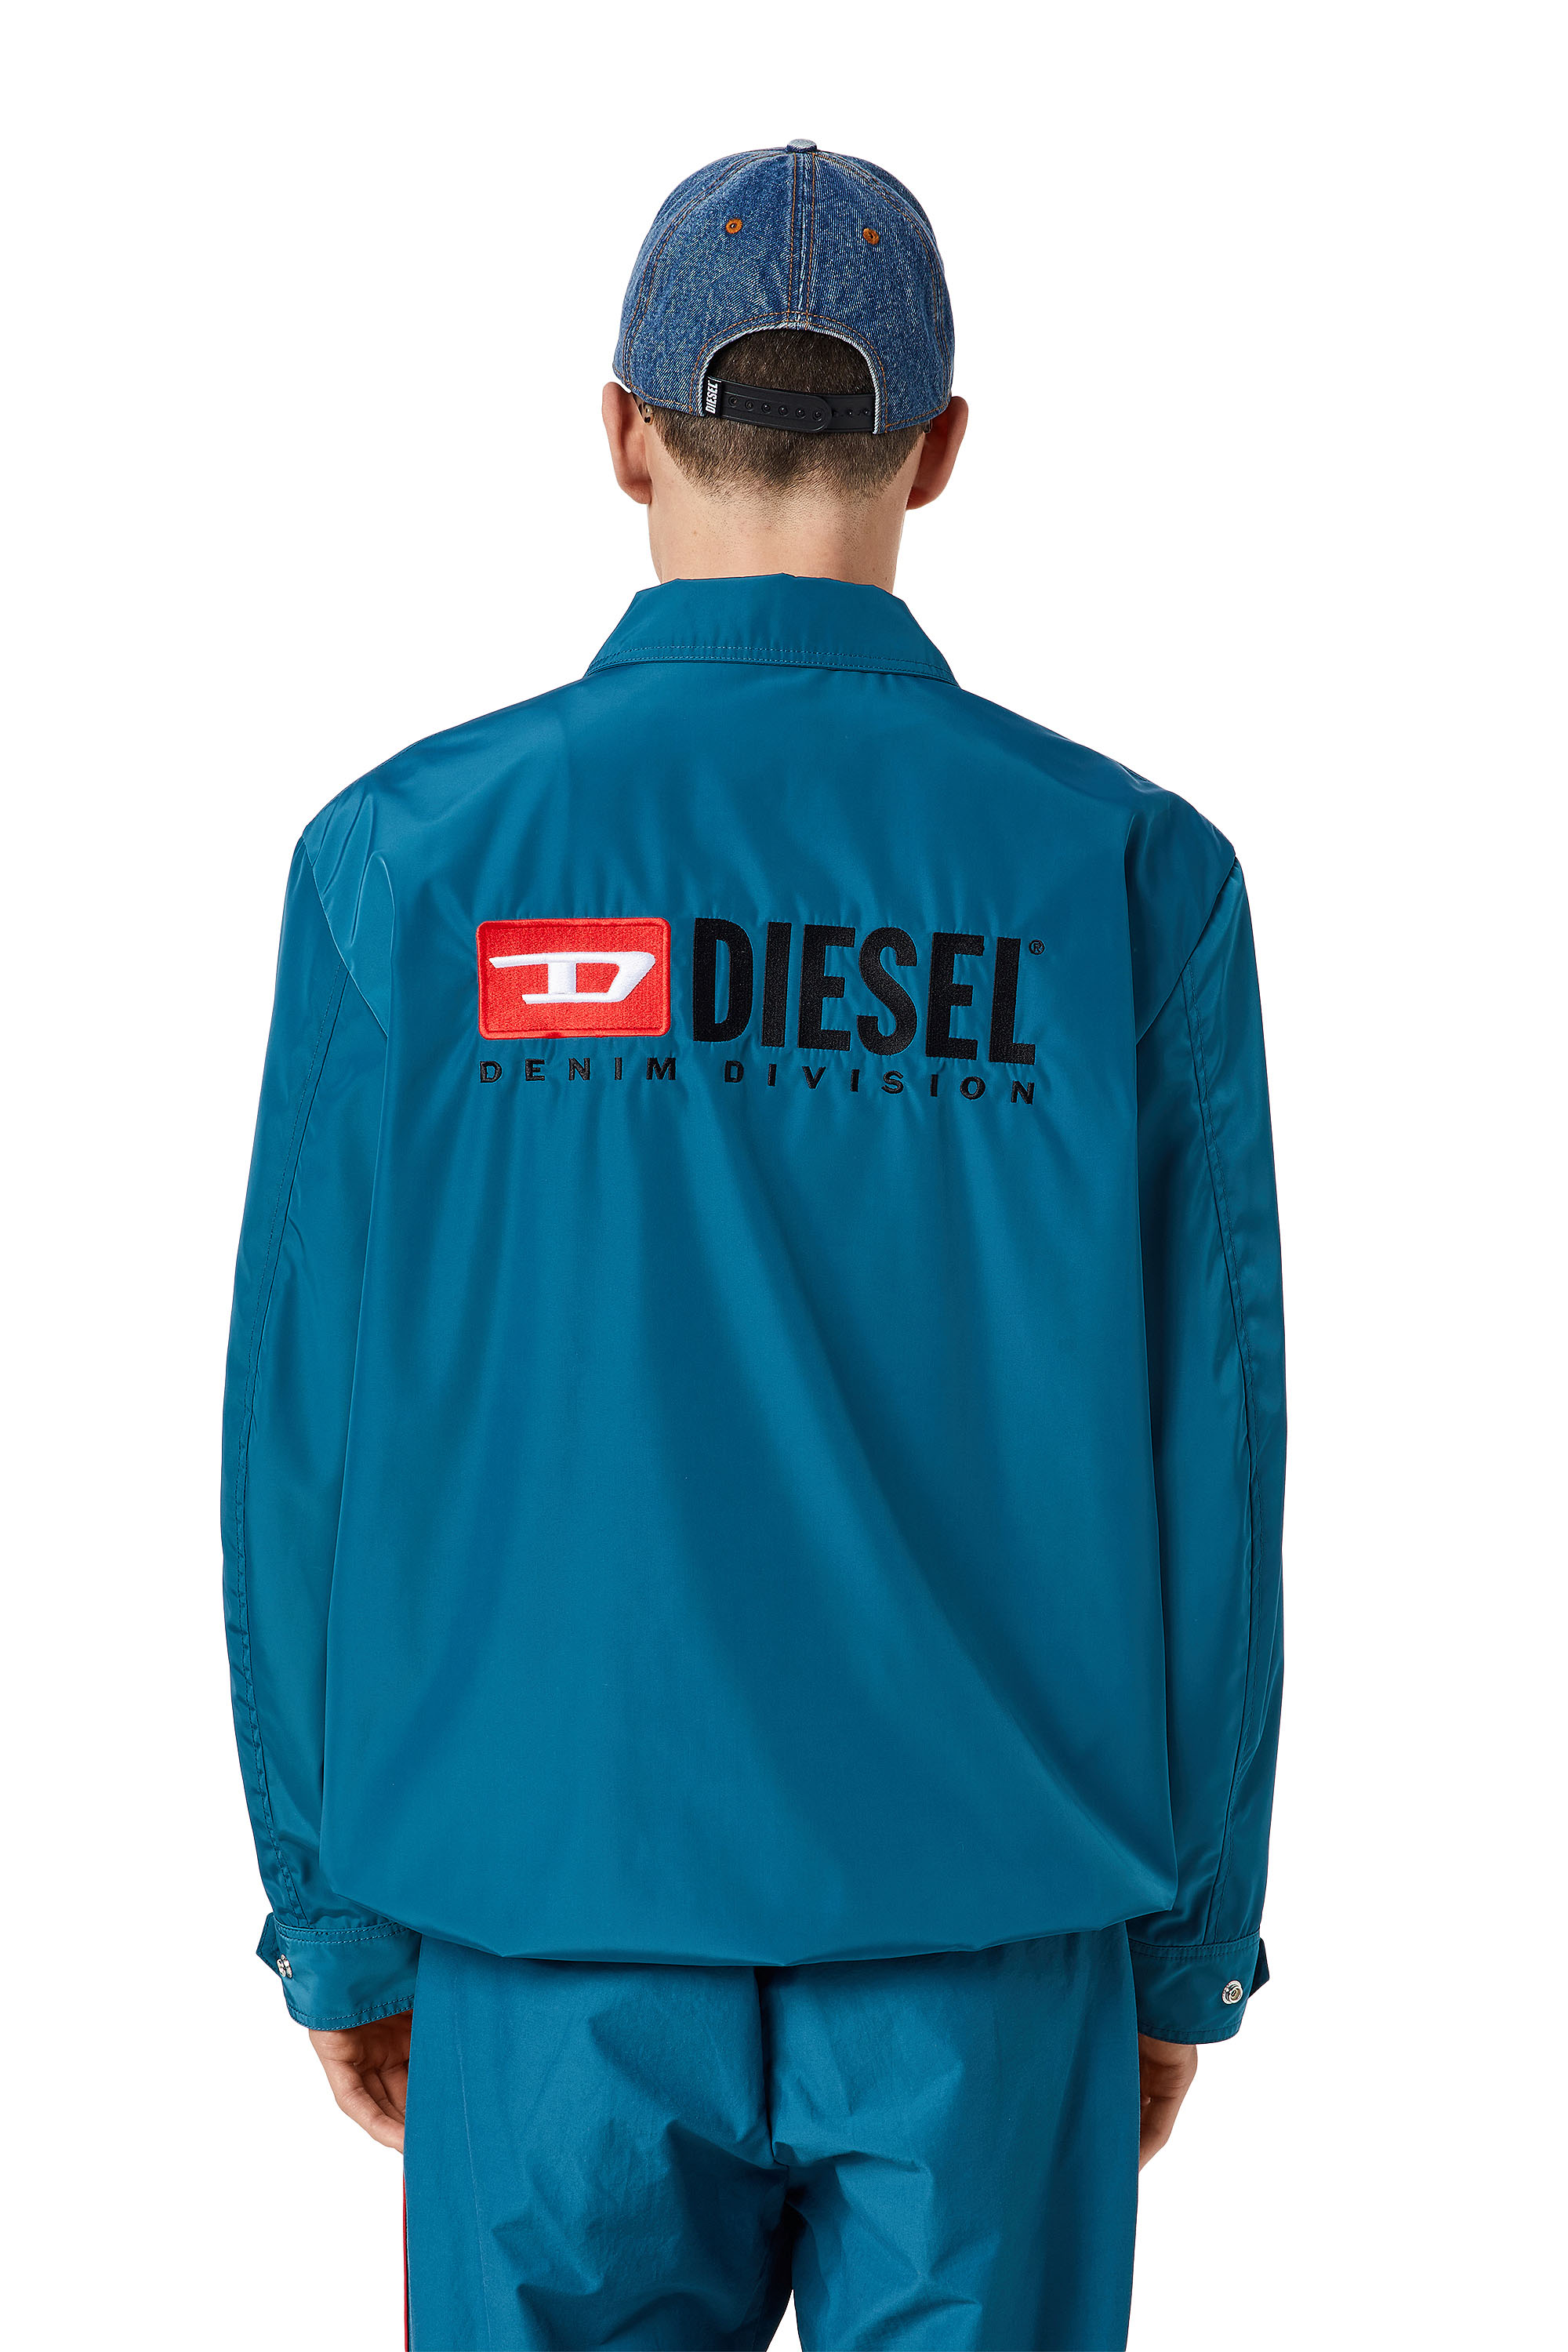 Diesel - J-COAL-NP, Azul - Image 2